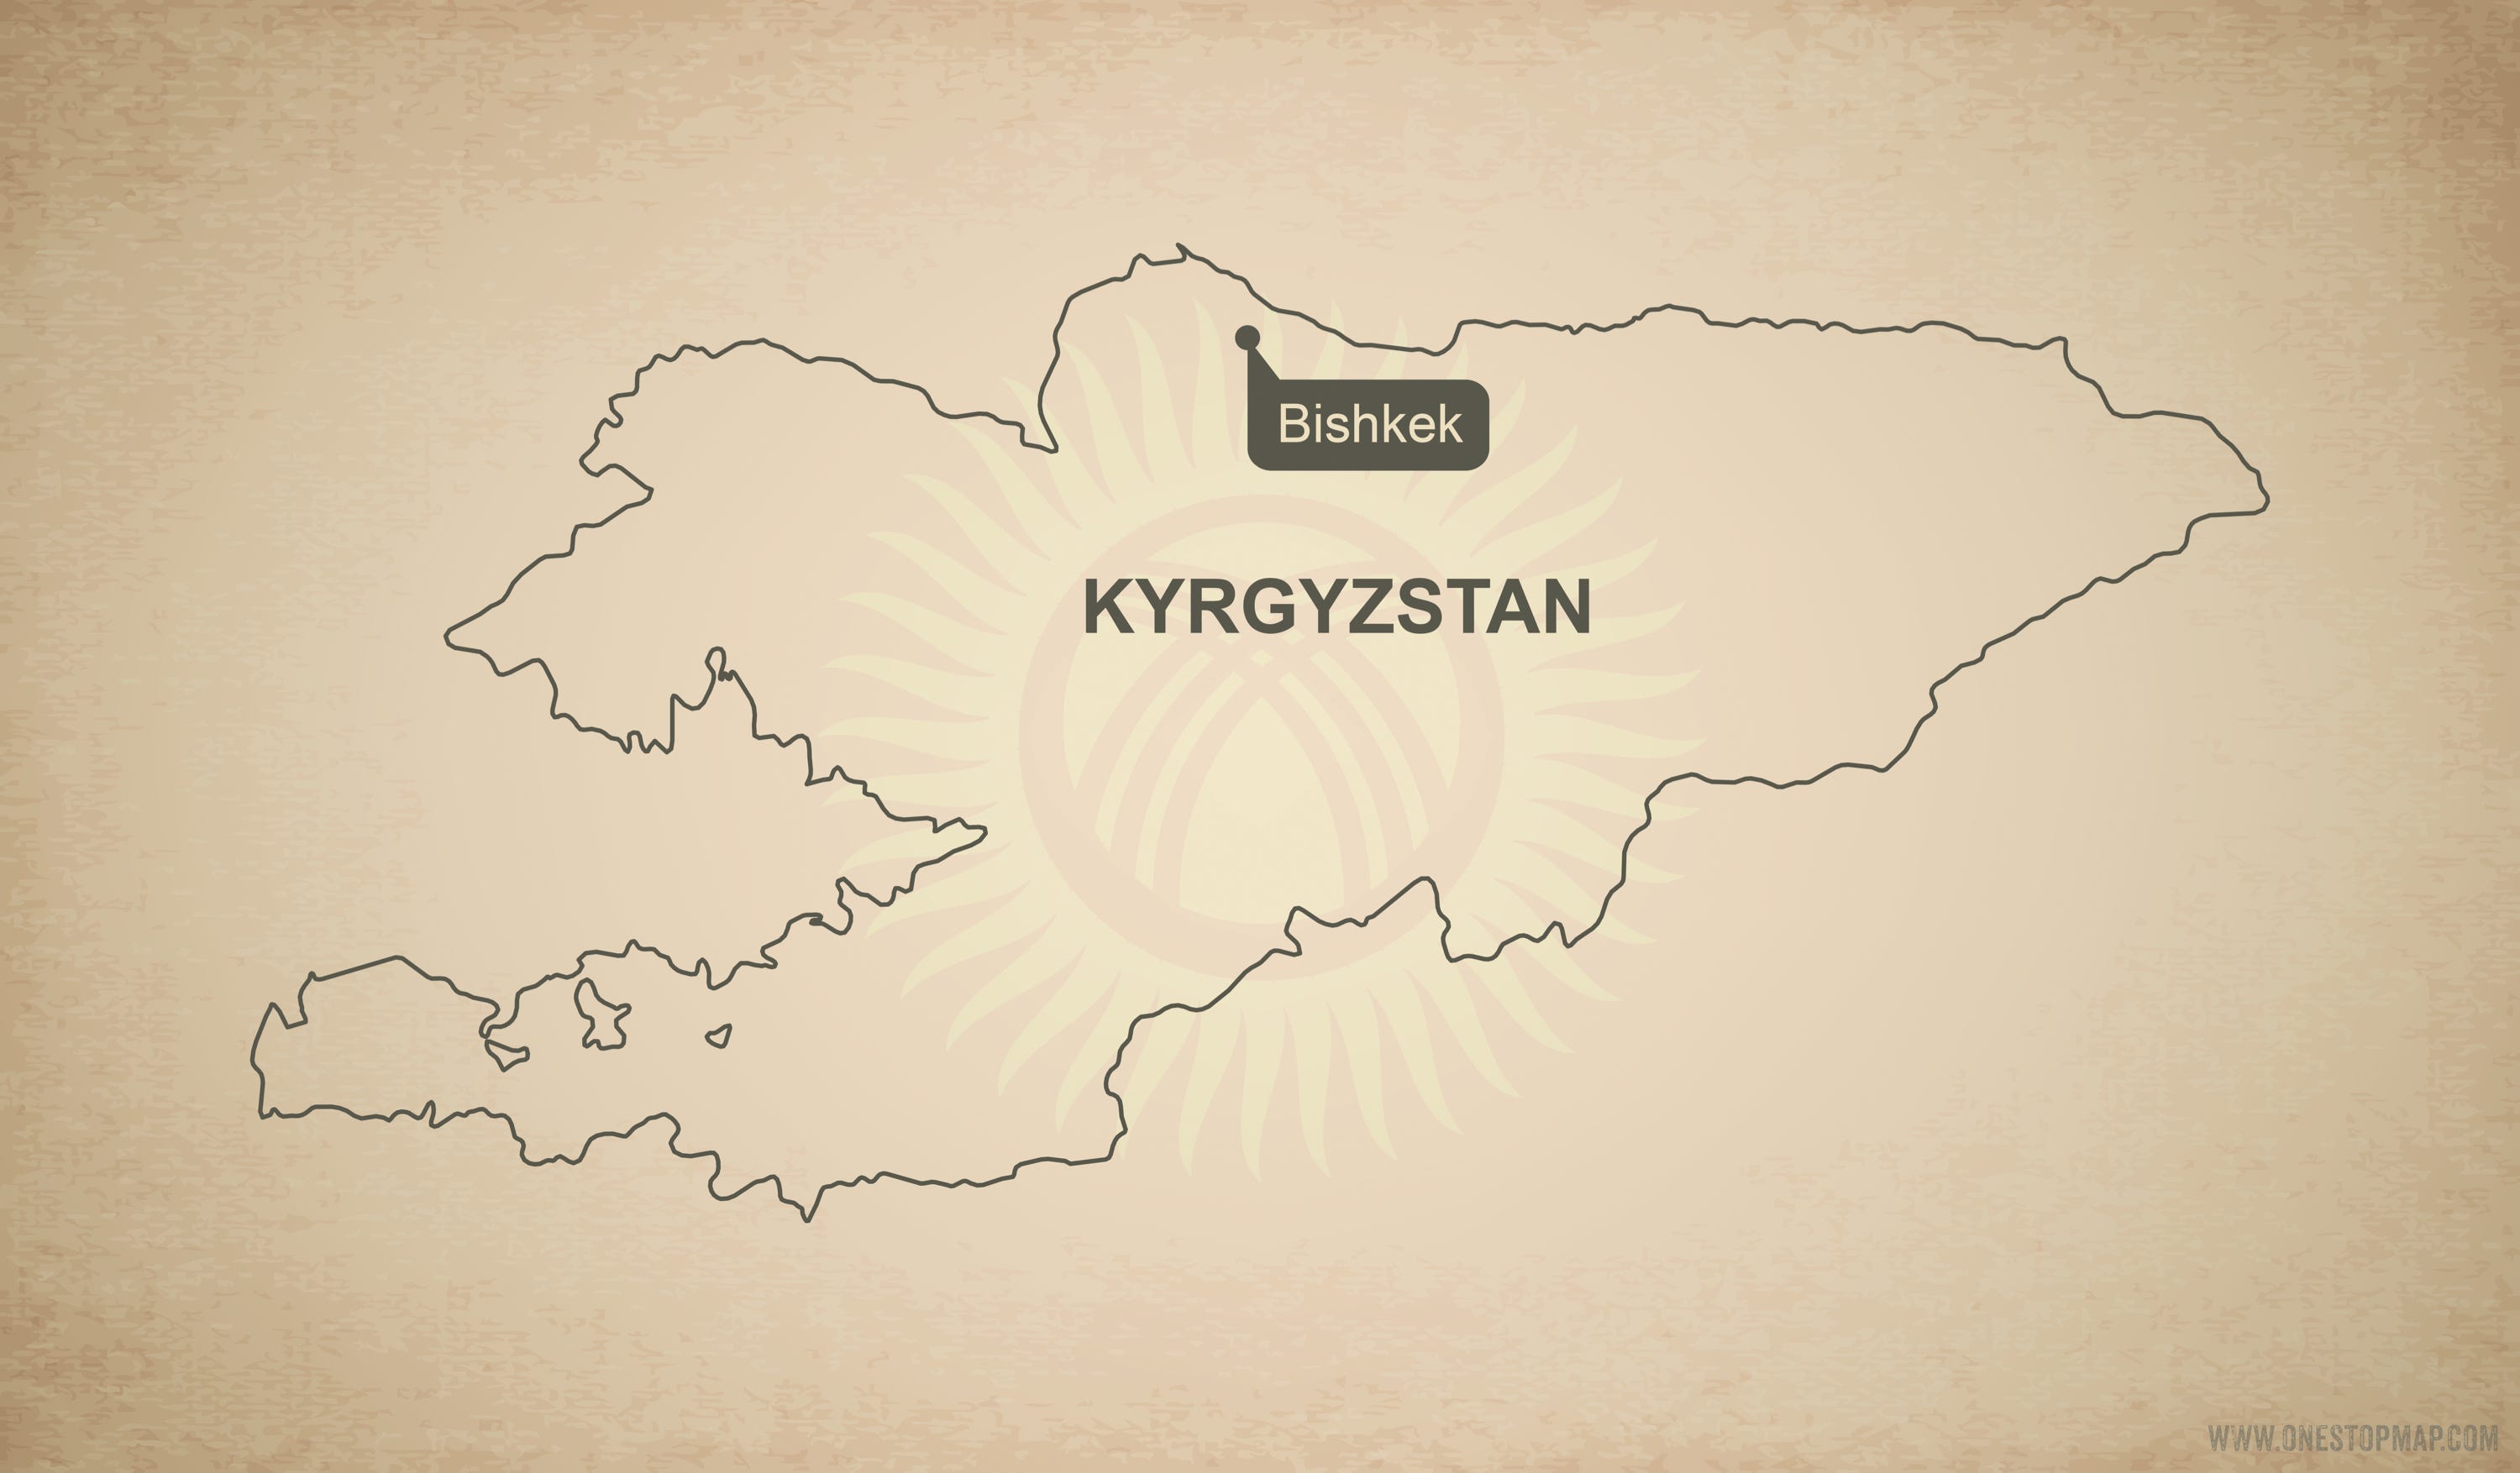 Kyrgyzstan V Vektore Server Vektornyh Kart Na Baze Osm2vectortiles By Gennady Karev Mad Devs Blog Ob It Medium